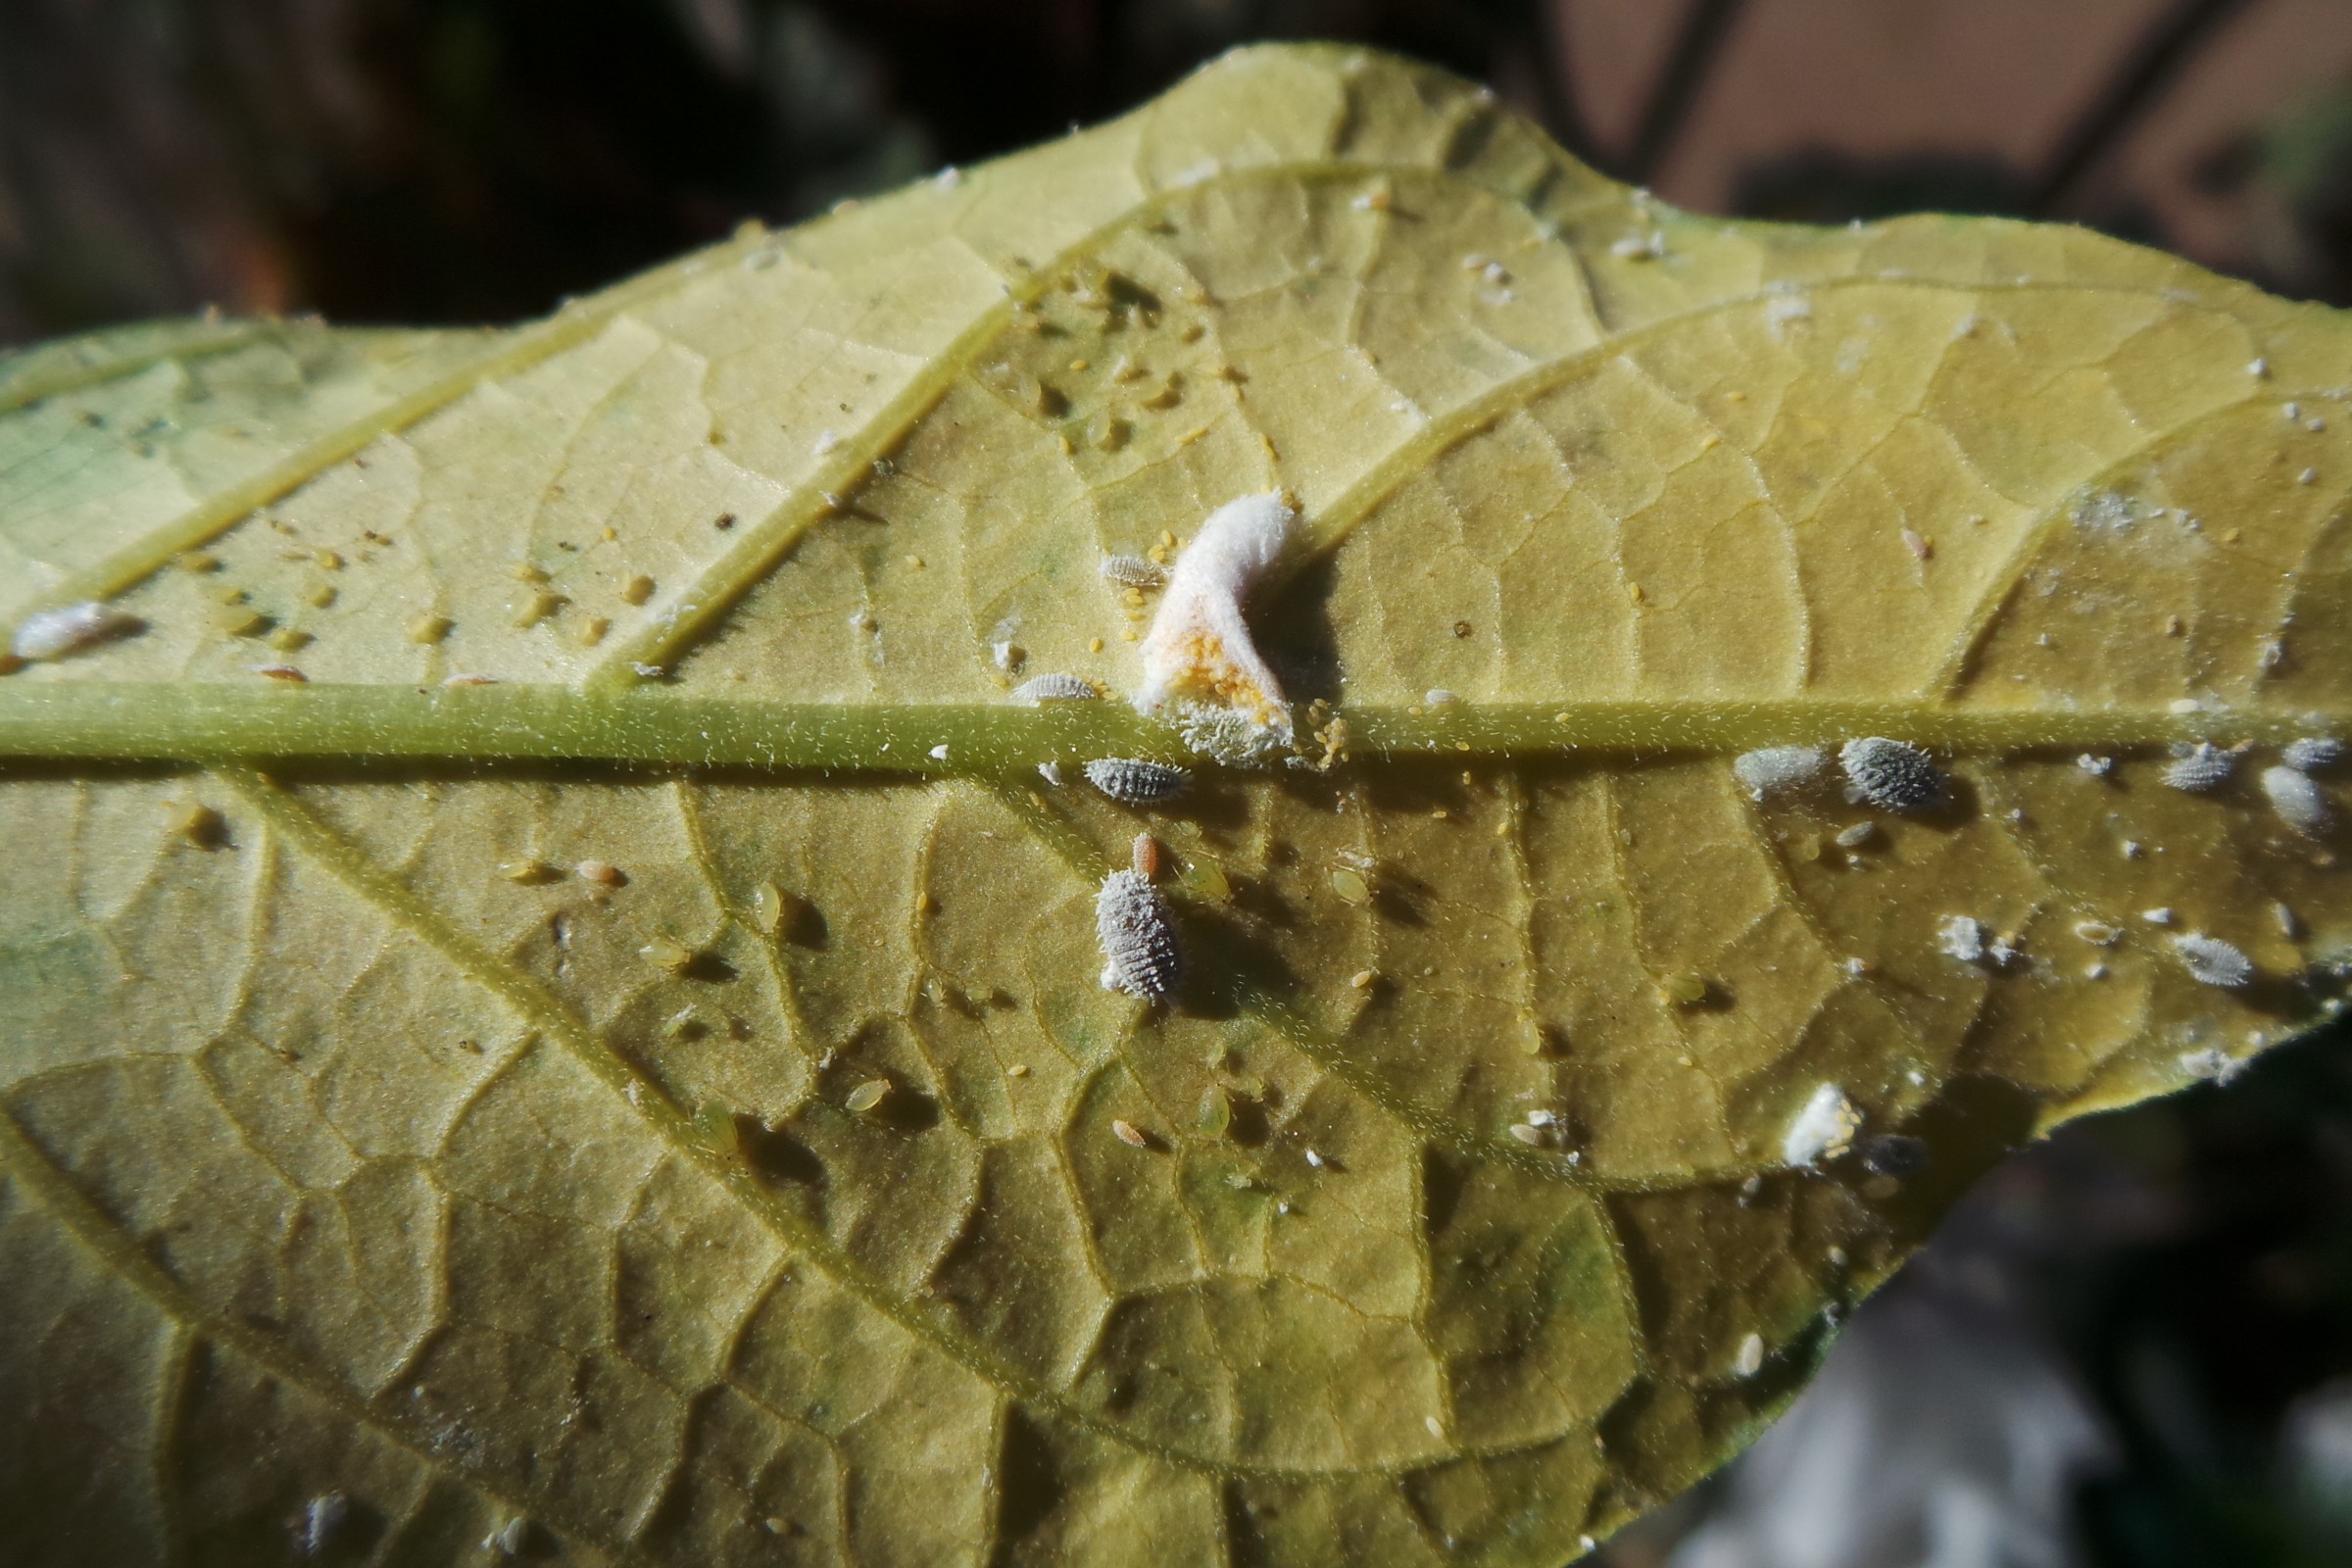 image of pest on leaf